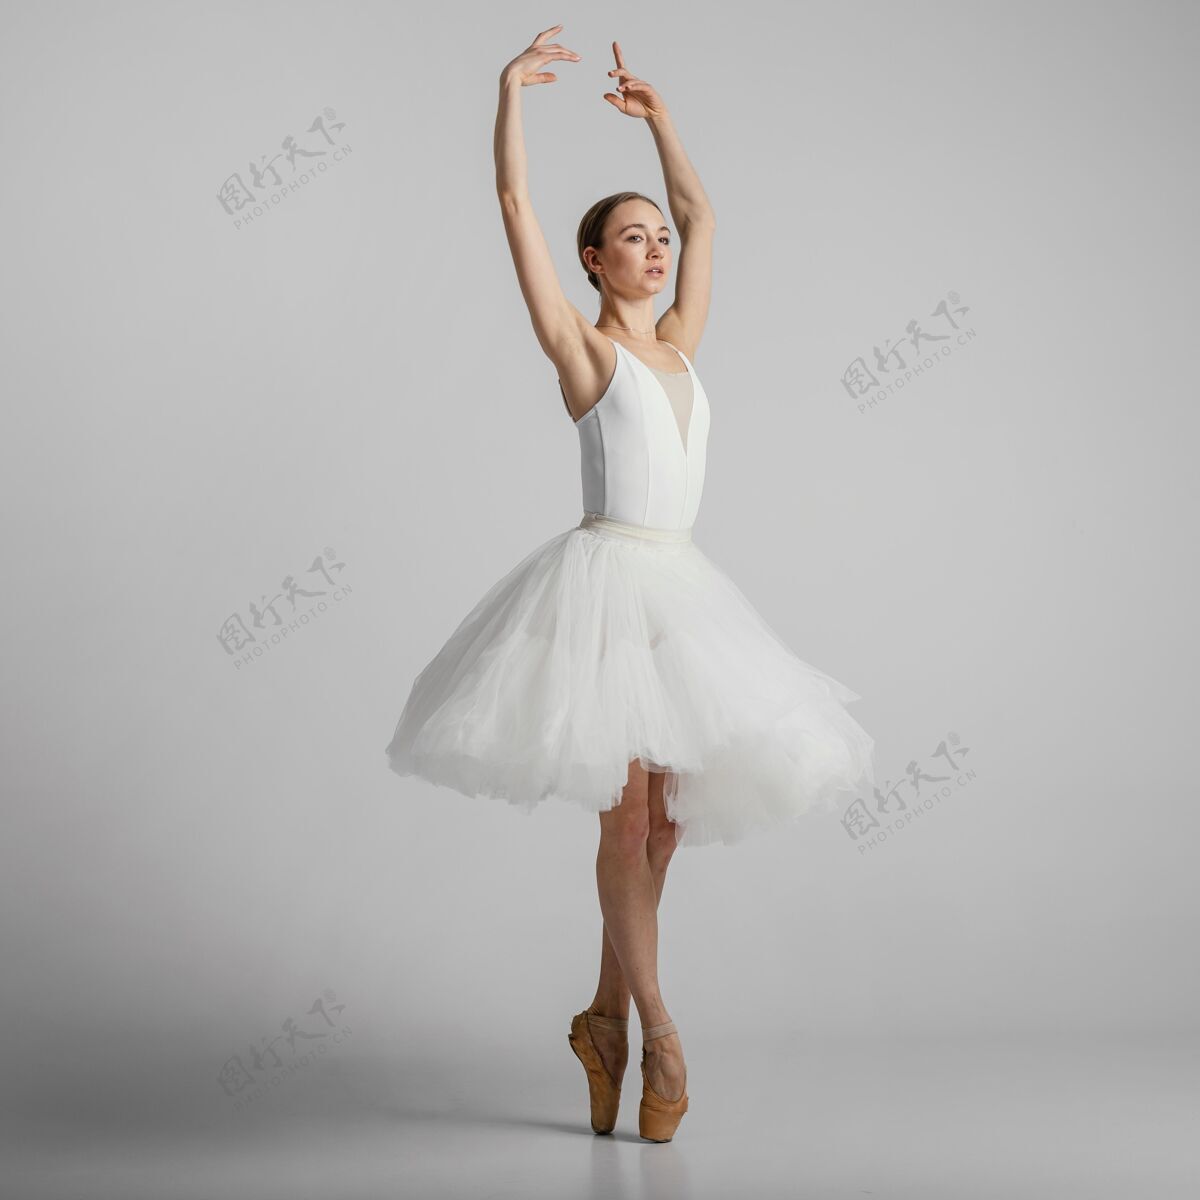 芭蕾舞穿着白色裙子的芭蕾舞演员姿势人才女人